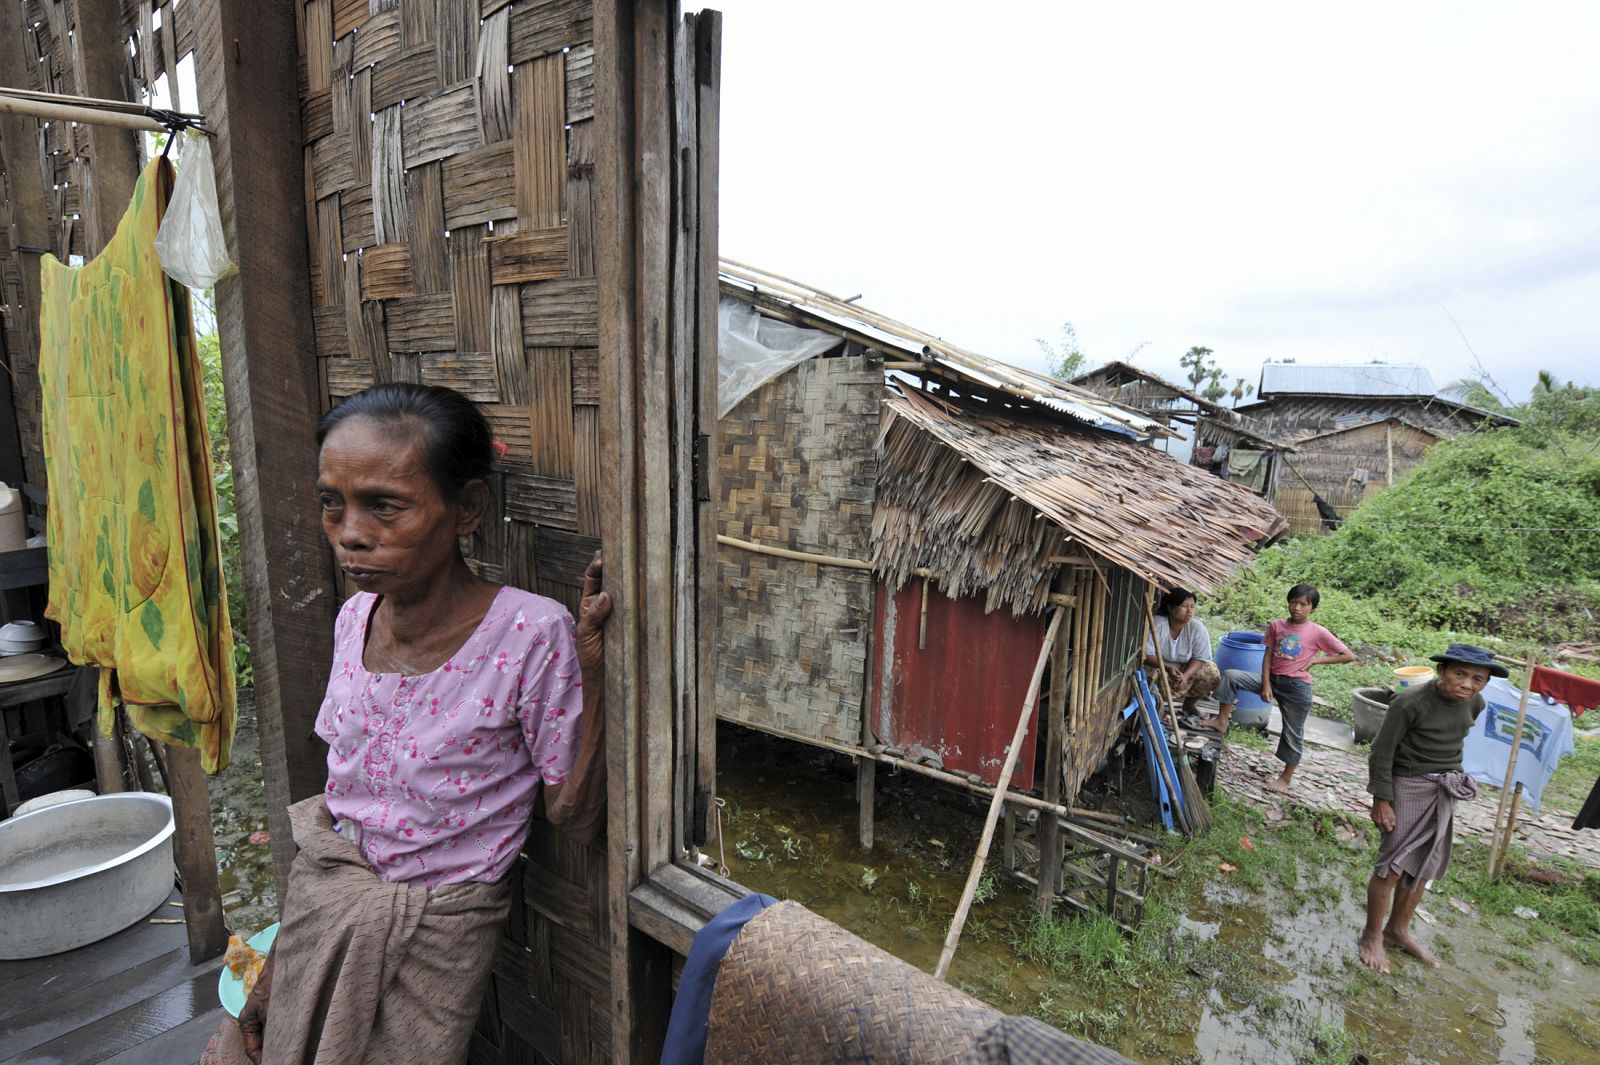 Un grupo de habitantes de una aldea cercana a Pyapon, Birmania, observa los daños qeu el Nargis ha causado en sus casas.